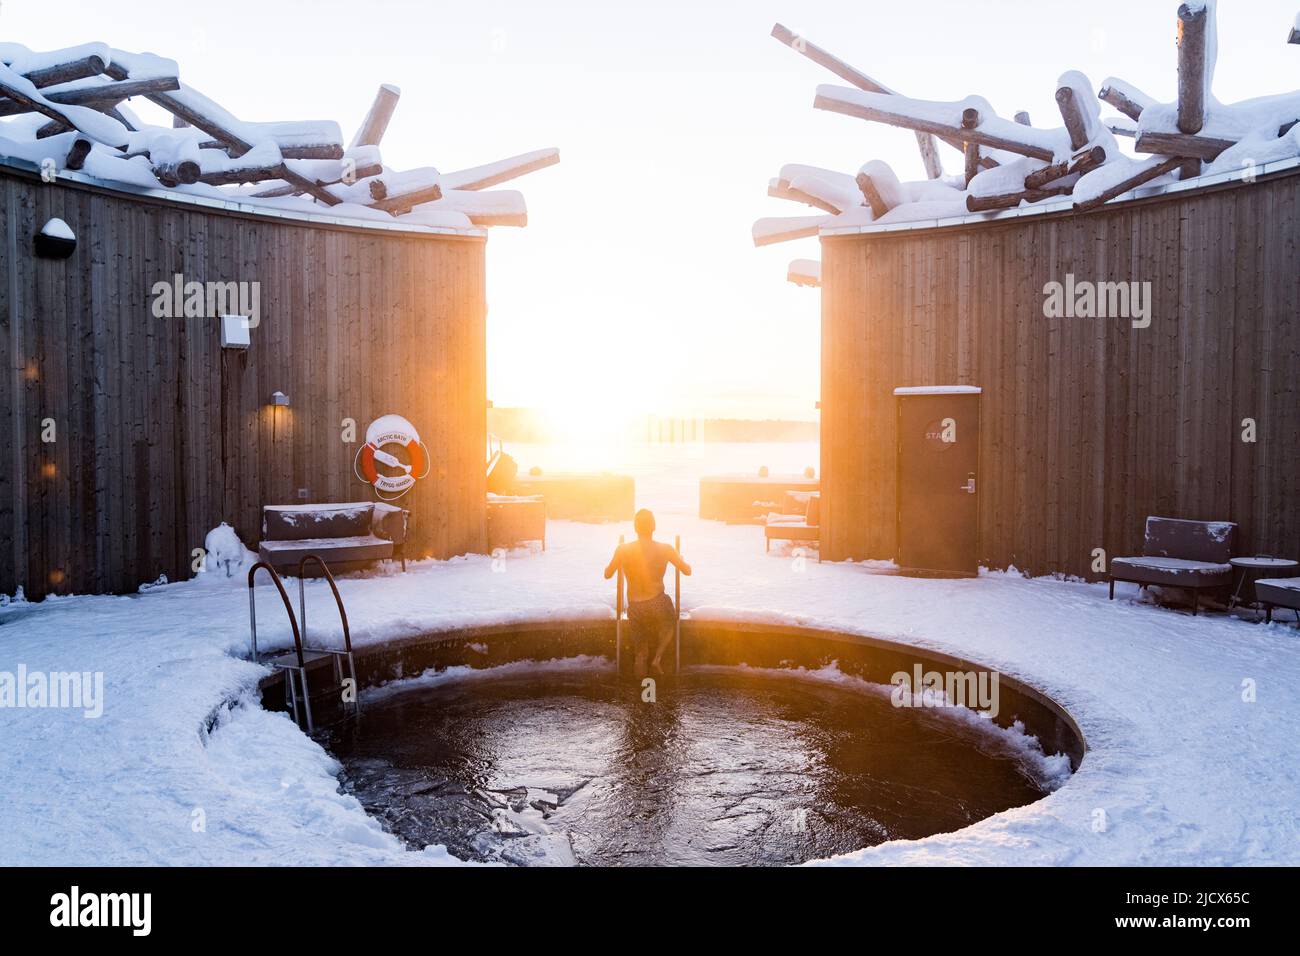 Uomo che si gode il tramonto mentre si prende un bagno freddo nella piscina dell'Arctic Bath Spa and Wellness Hotel, Harads, Lapponia, Svezia, Scandinavia, Europa Foto Stock